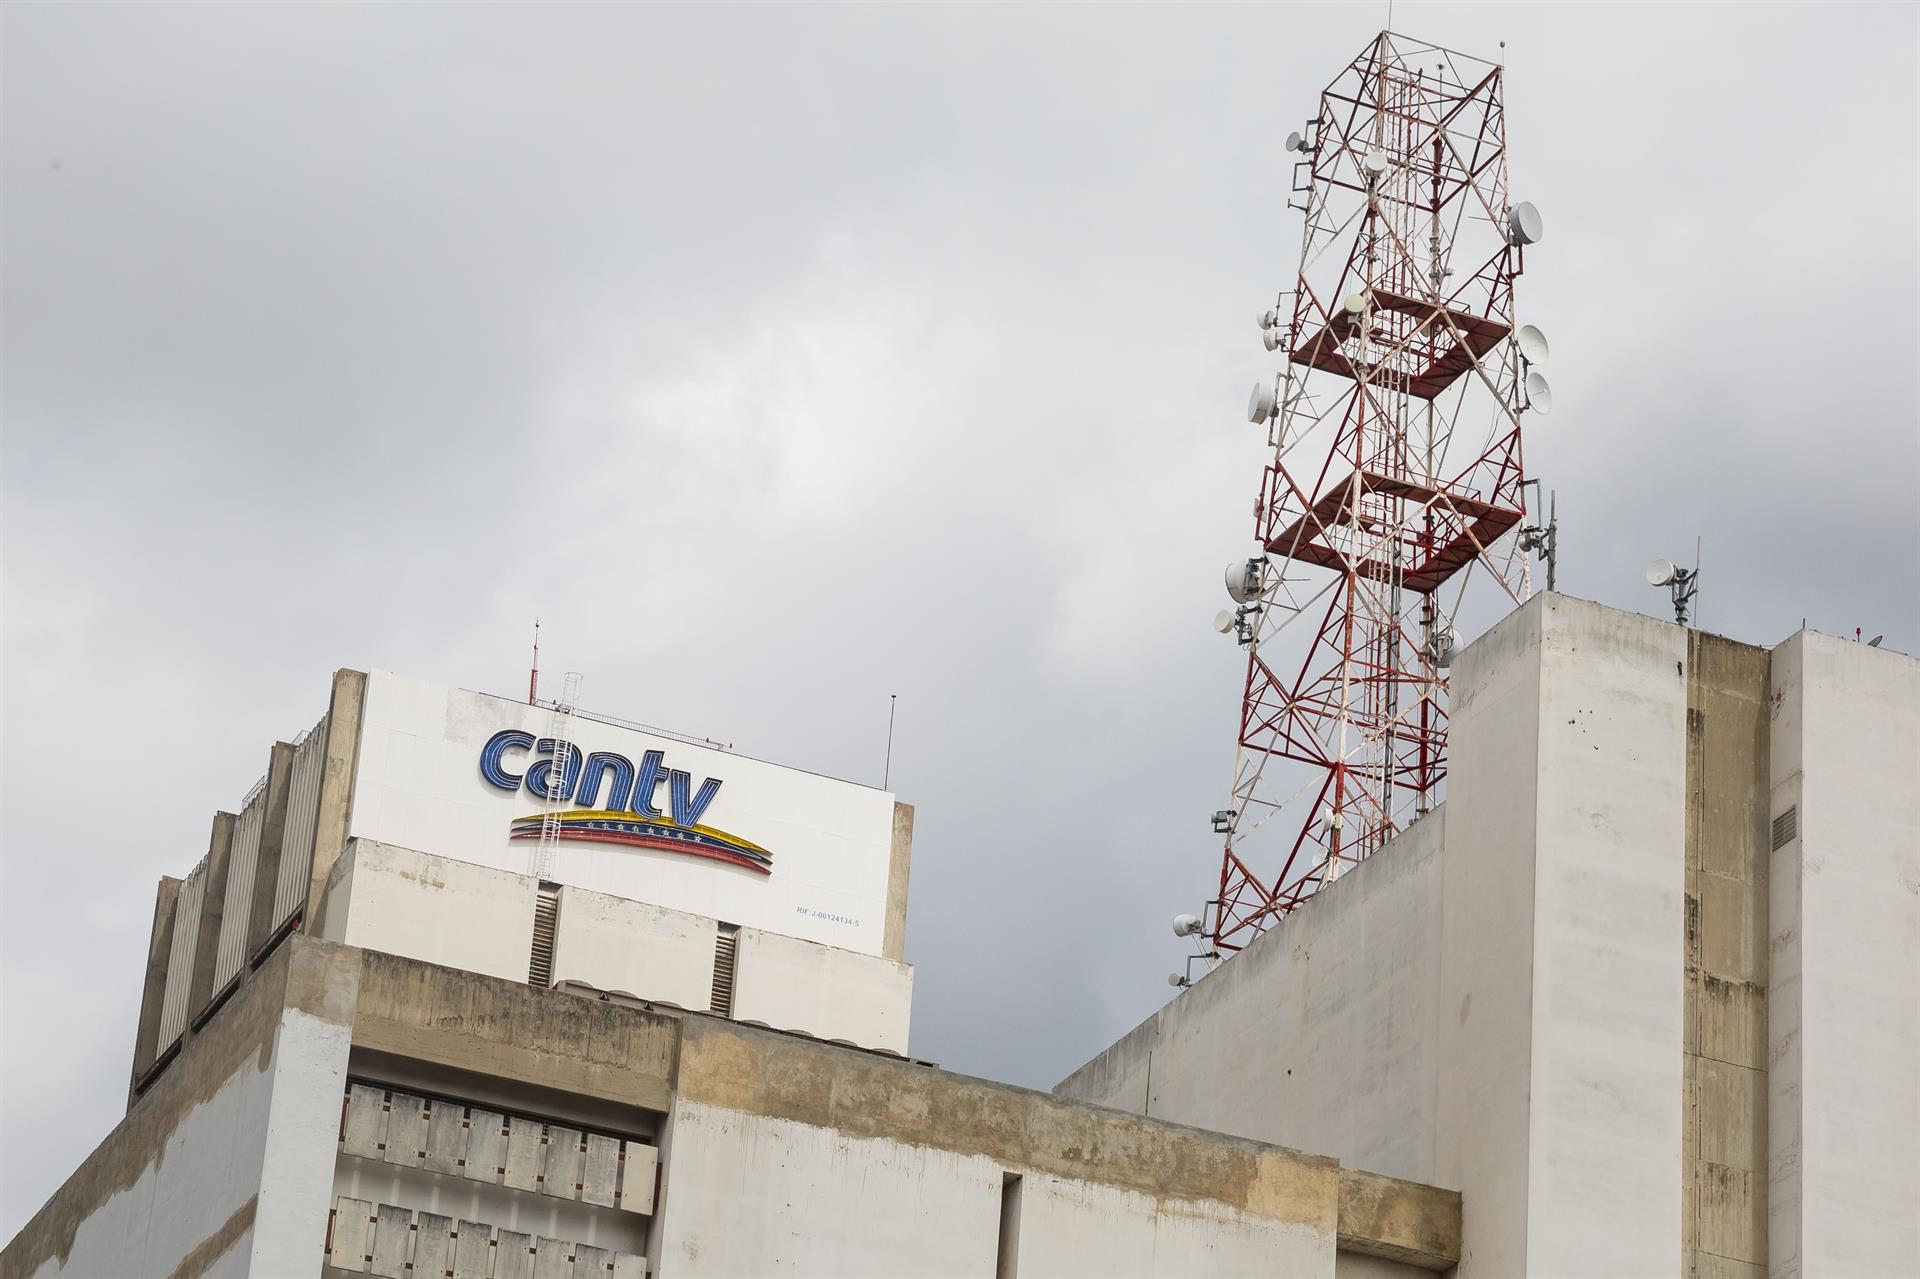 Cantv informó que servicio de Internet ABA se encuentra caído en toda Venezuela #7May